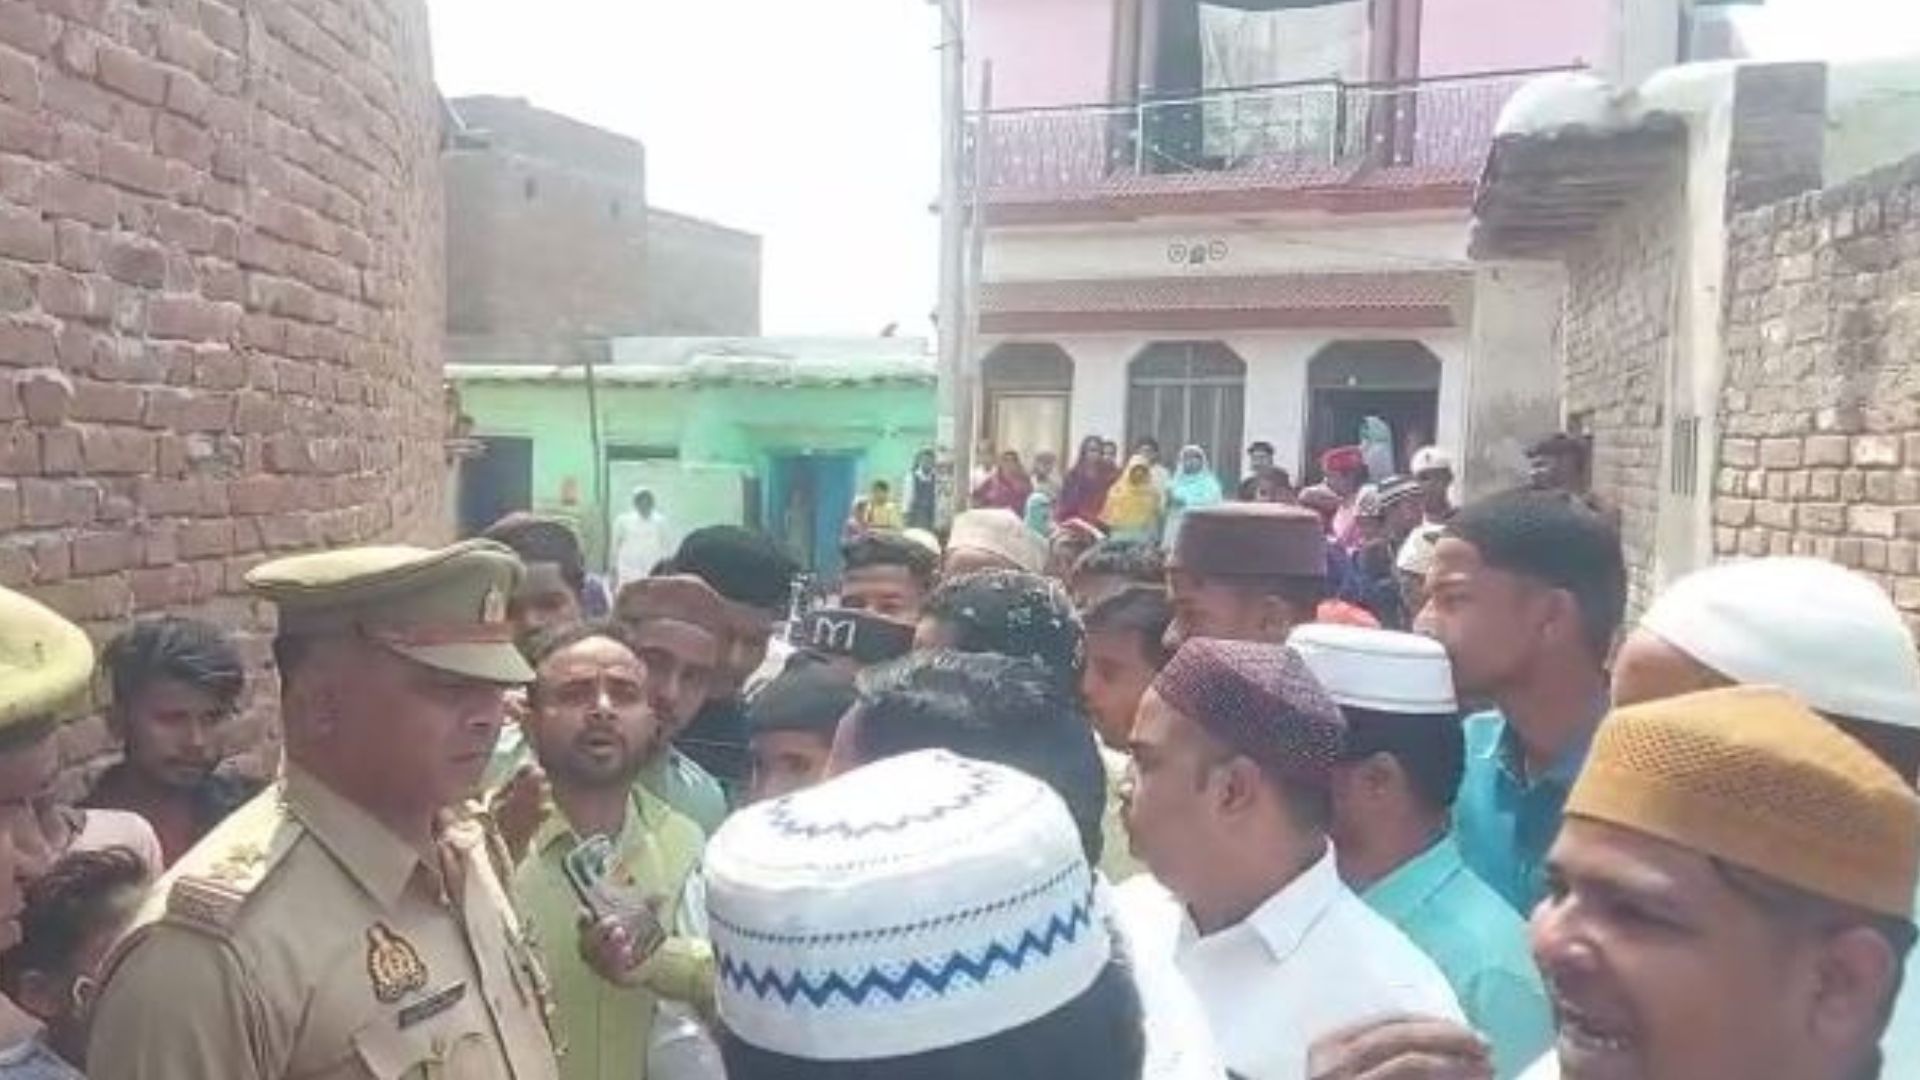 बरेली: मस्जिद की छत पर नमाज पढ़ने को लेकर हुआ विवाद, पुलिस ने कराया शांत 